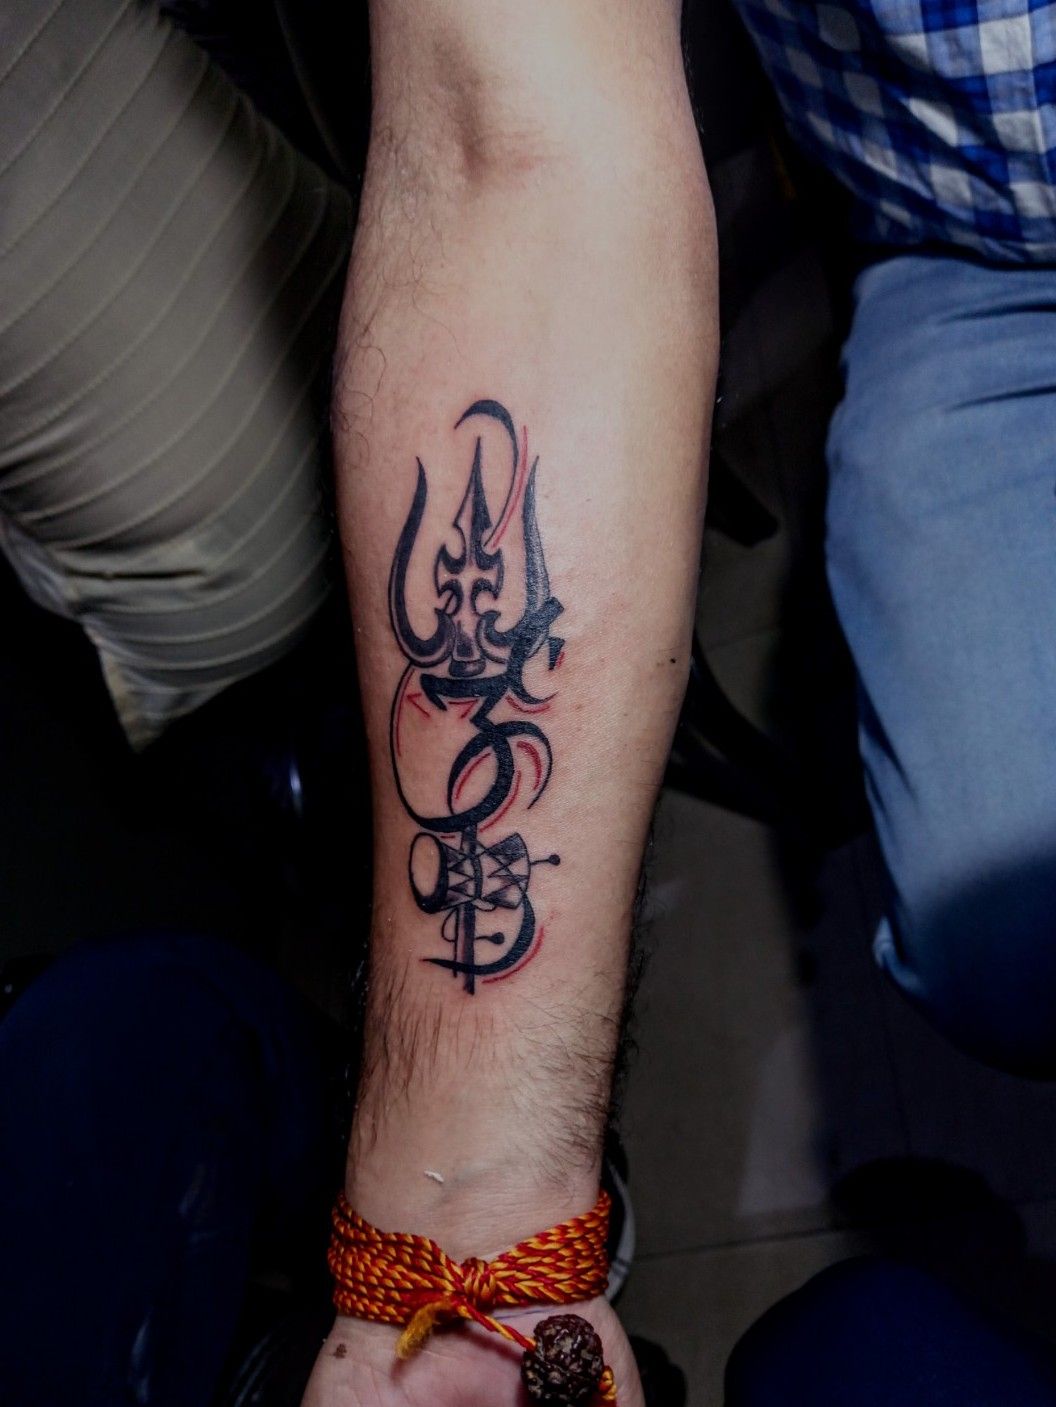 Om Tattoo | All seeing eye tattoo, Shiva tattoo design, Om tattoo